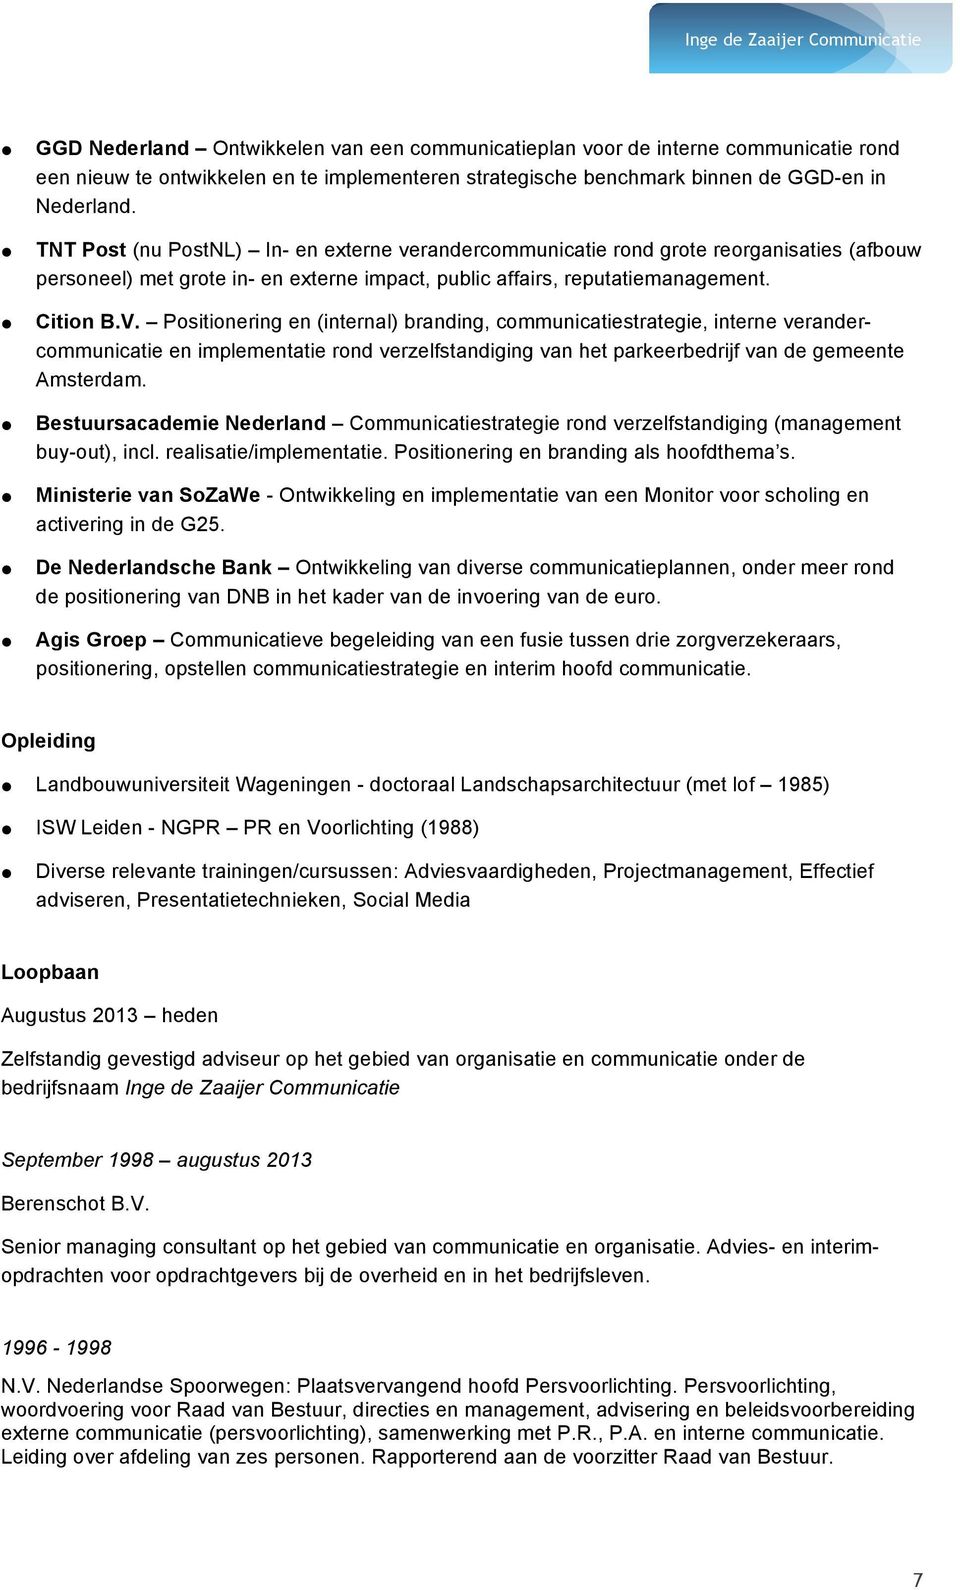 Positionering en (internal) branding, communicatiestrategie, interne verandercommunicatie en implementatie rond verzelfstandiging van het parkeerbedrijf van de gemeente Amsterdam.